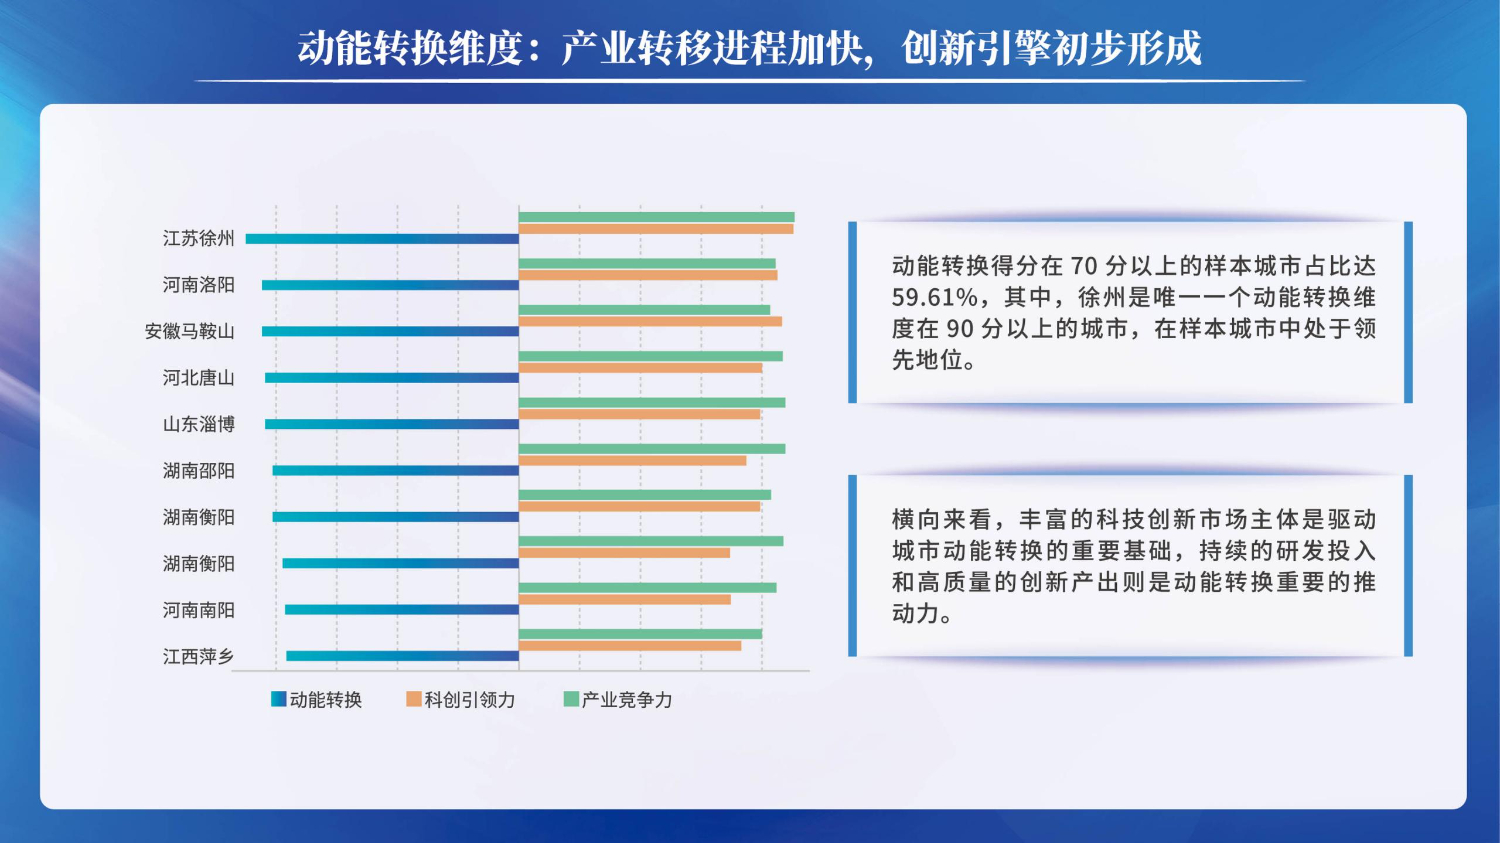 06201503中国资源型城市转型发展指数(1)_15.jpg